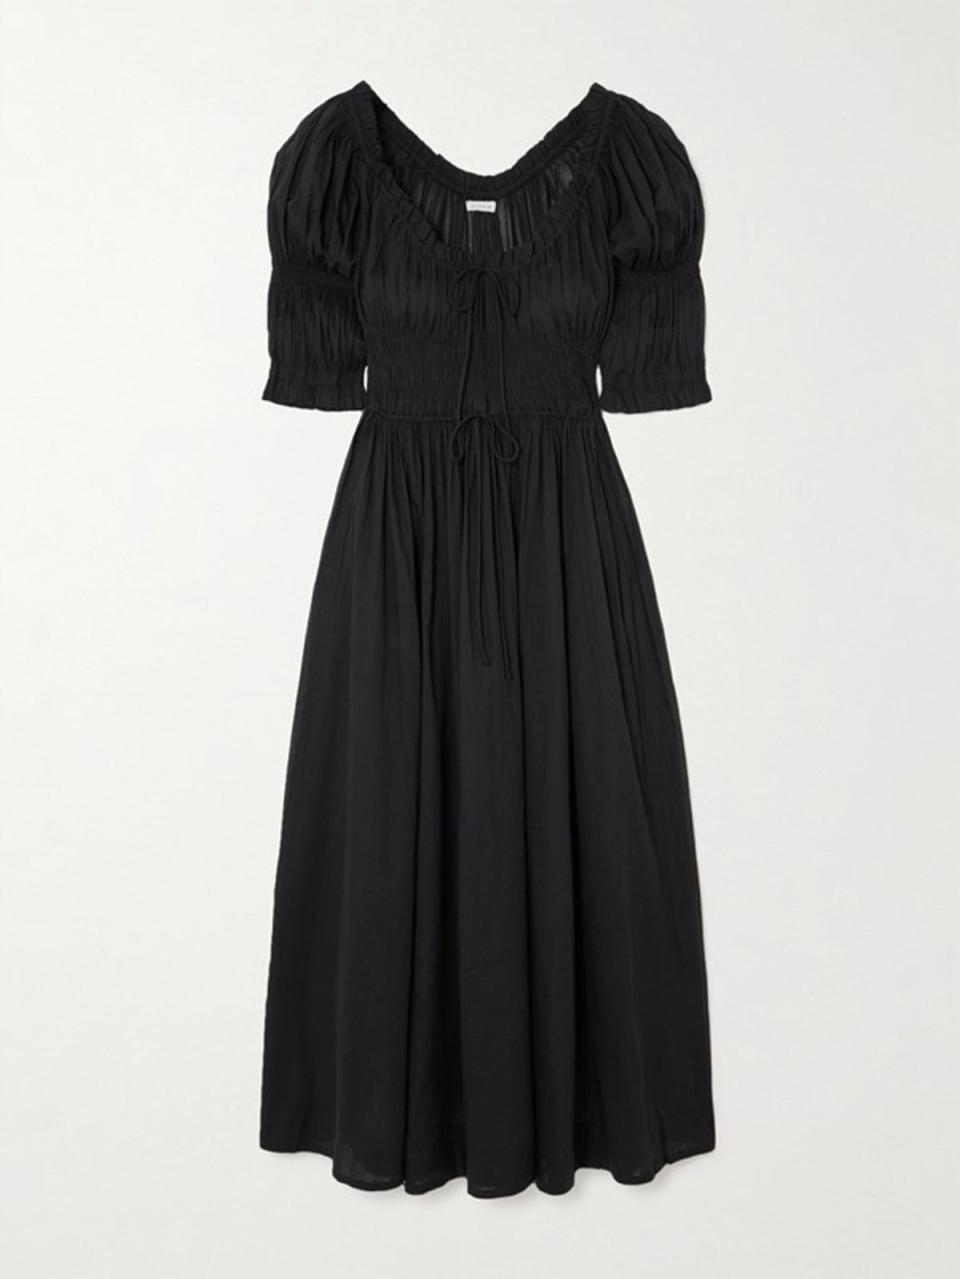 Φόρεμα Ischia σε μαύρο, £325, DÔEN, net-a-porter.com (DÔEN)